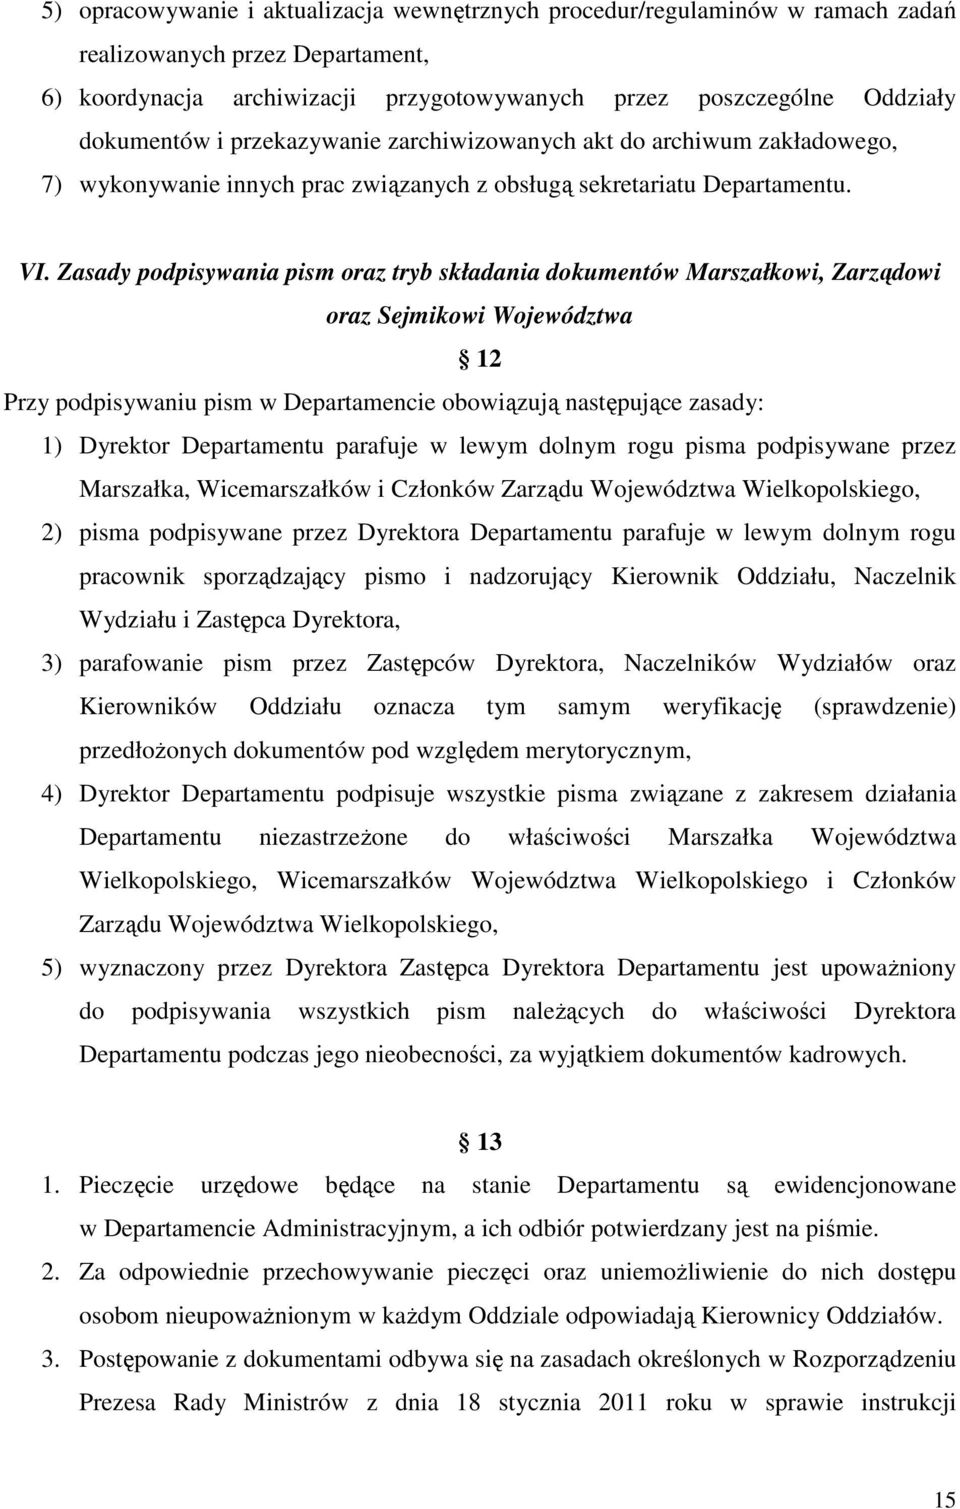 Zasady podpisywania pism oraz tryb składania dokumentów Marszałkowi, Zarządowi oraz Sejmikowi Województwa 12 Przy podpisywaniu pism w Departamencie obowiązują następujące zasady: 1) Dyrektor